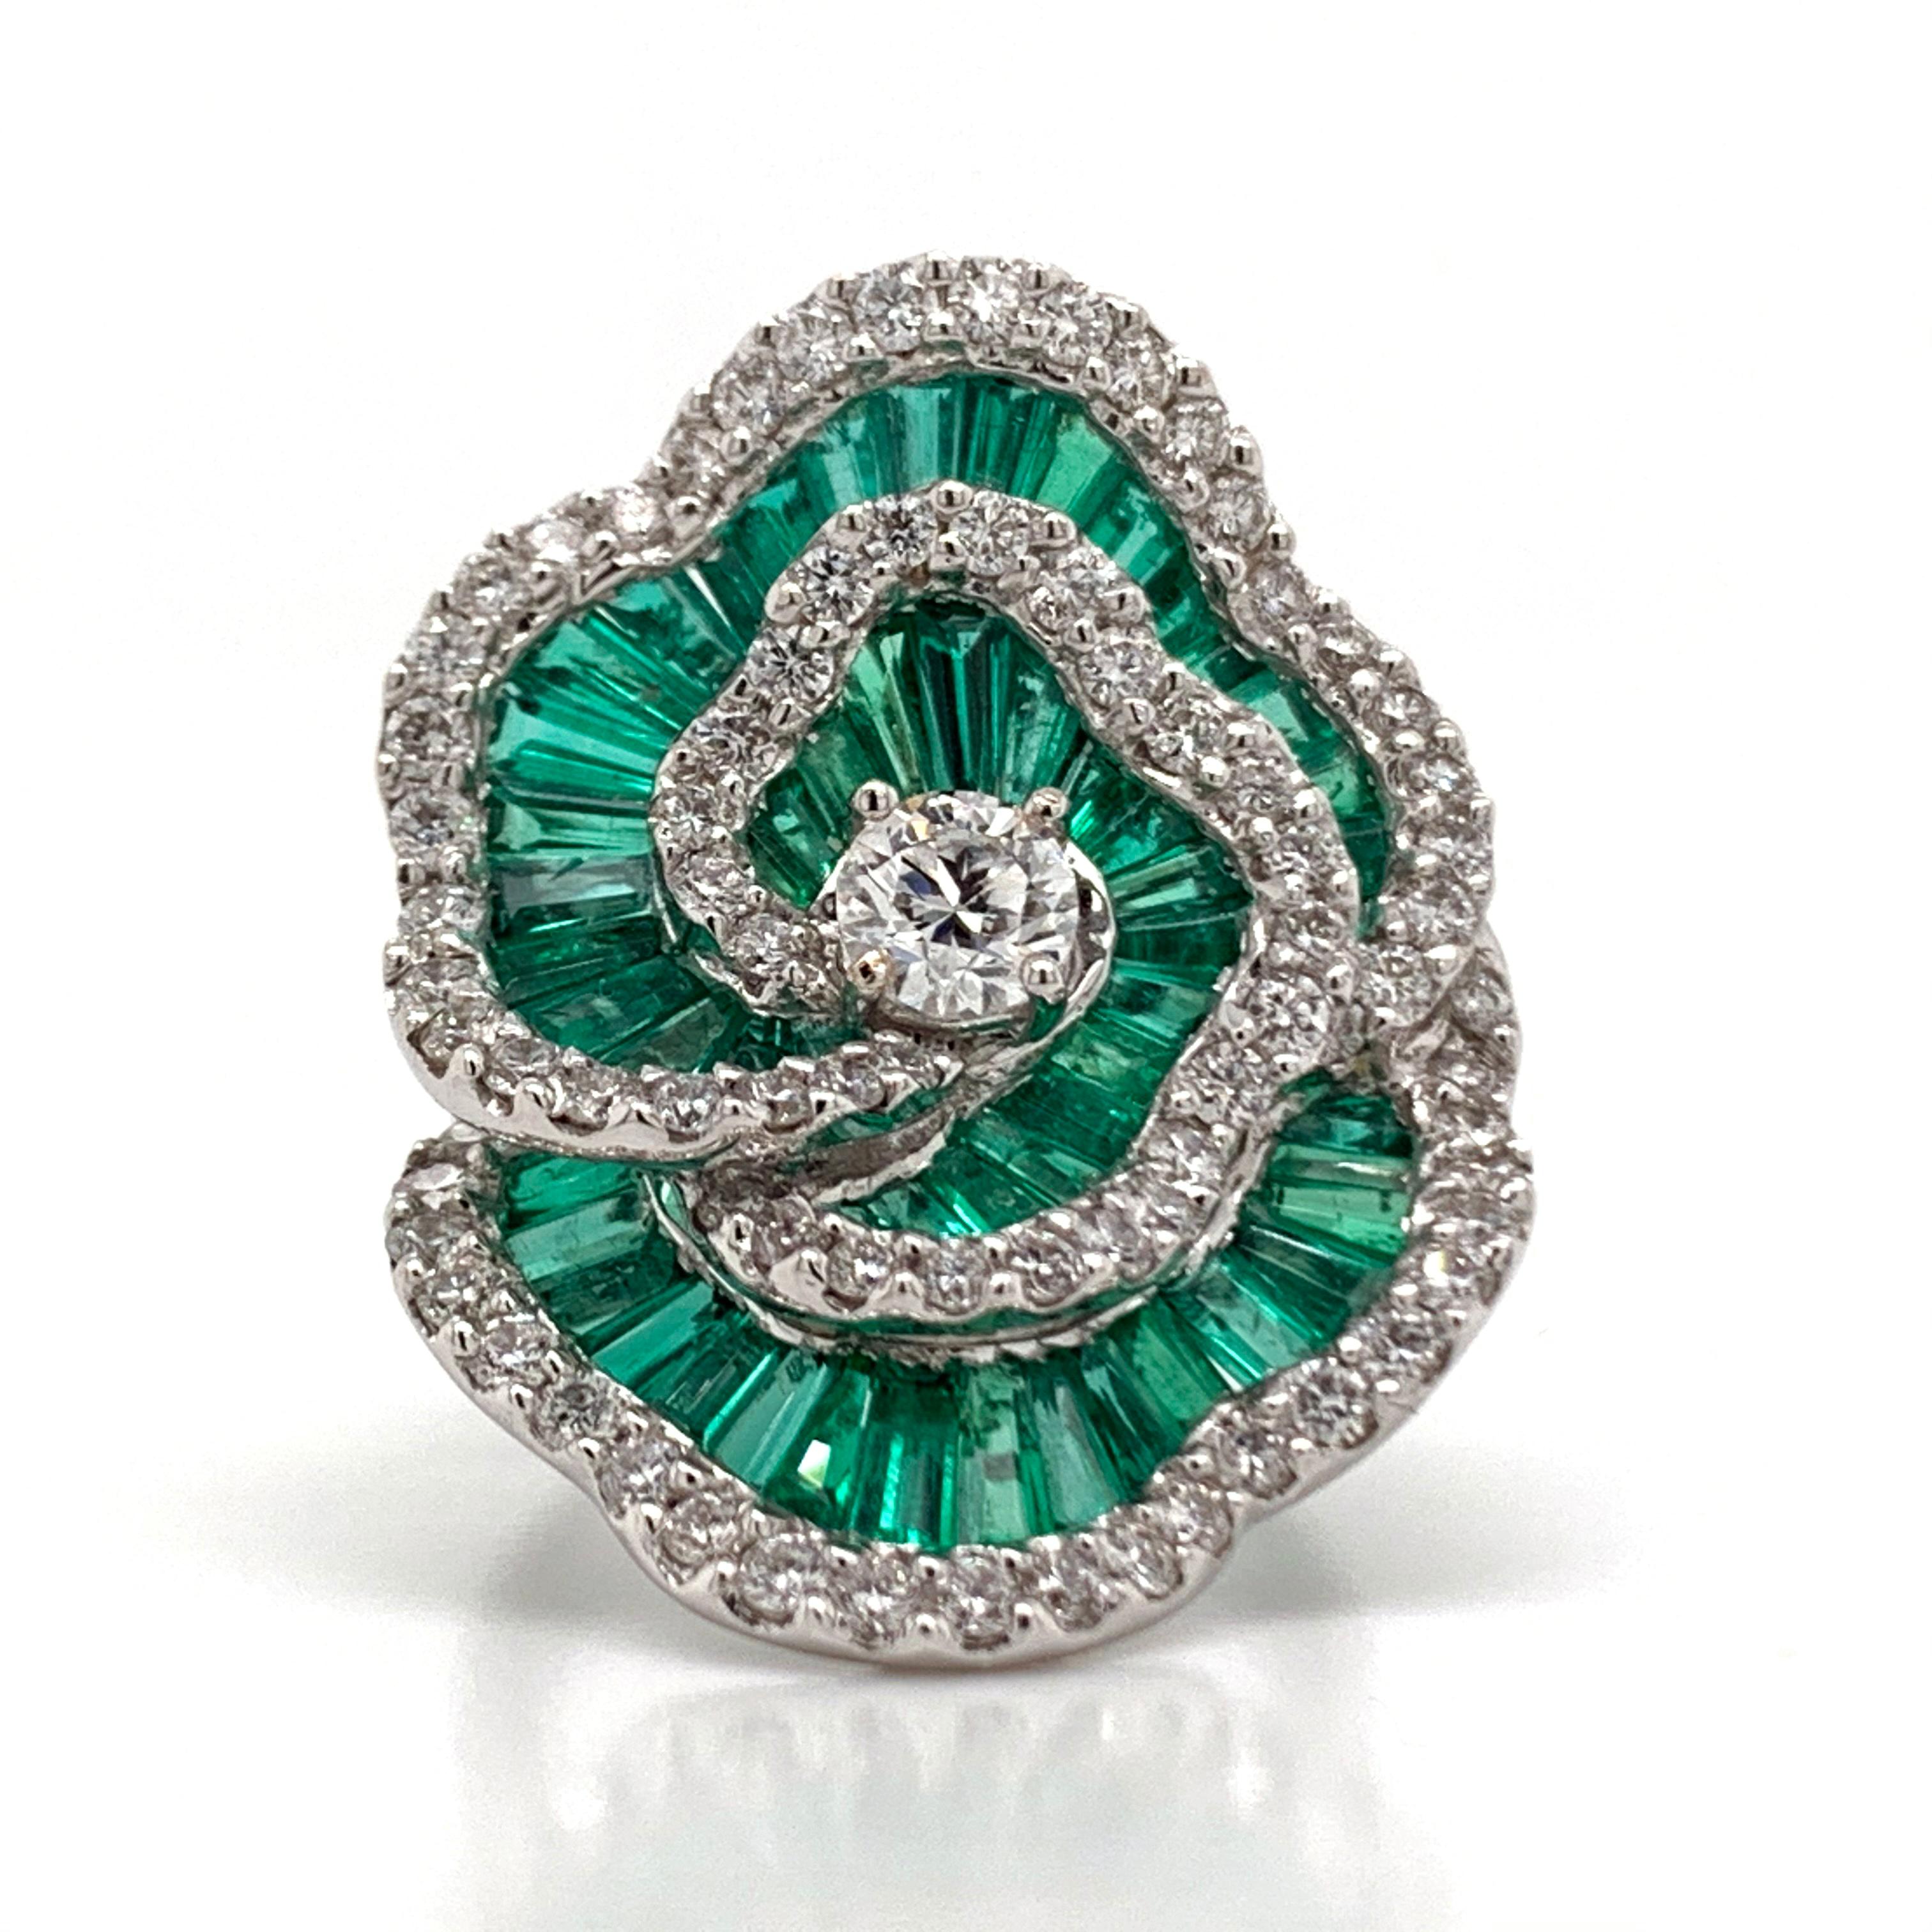 Eine schöne, Smaragd und Diamant Blume Ring in einem US-Ring Größe 6,75. Dieser schöne, goldene Ring  wiegt 15,1 Gramm. Der aus poliertem Weißgold gefertigte Ring enthält eine Reihe wunderschön geformter Smaragde, die von herrlich funkelnden